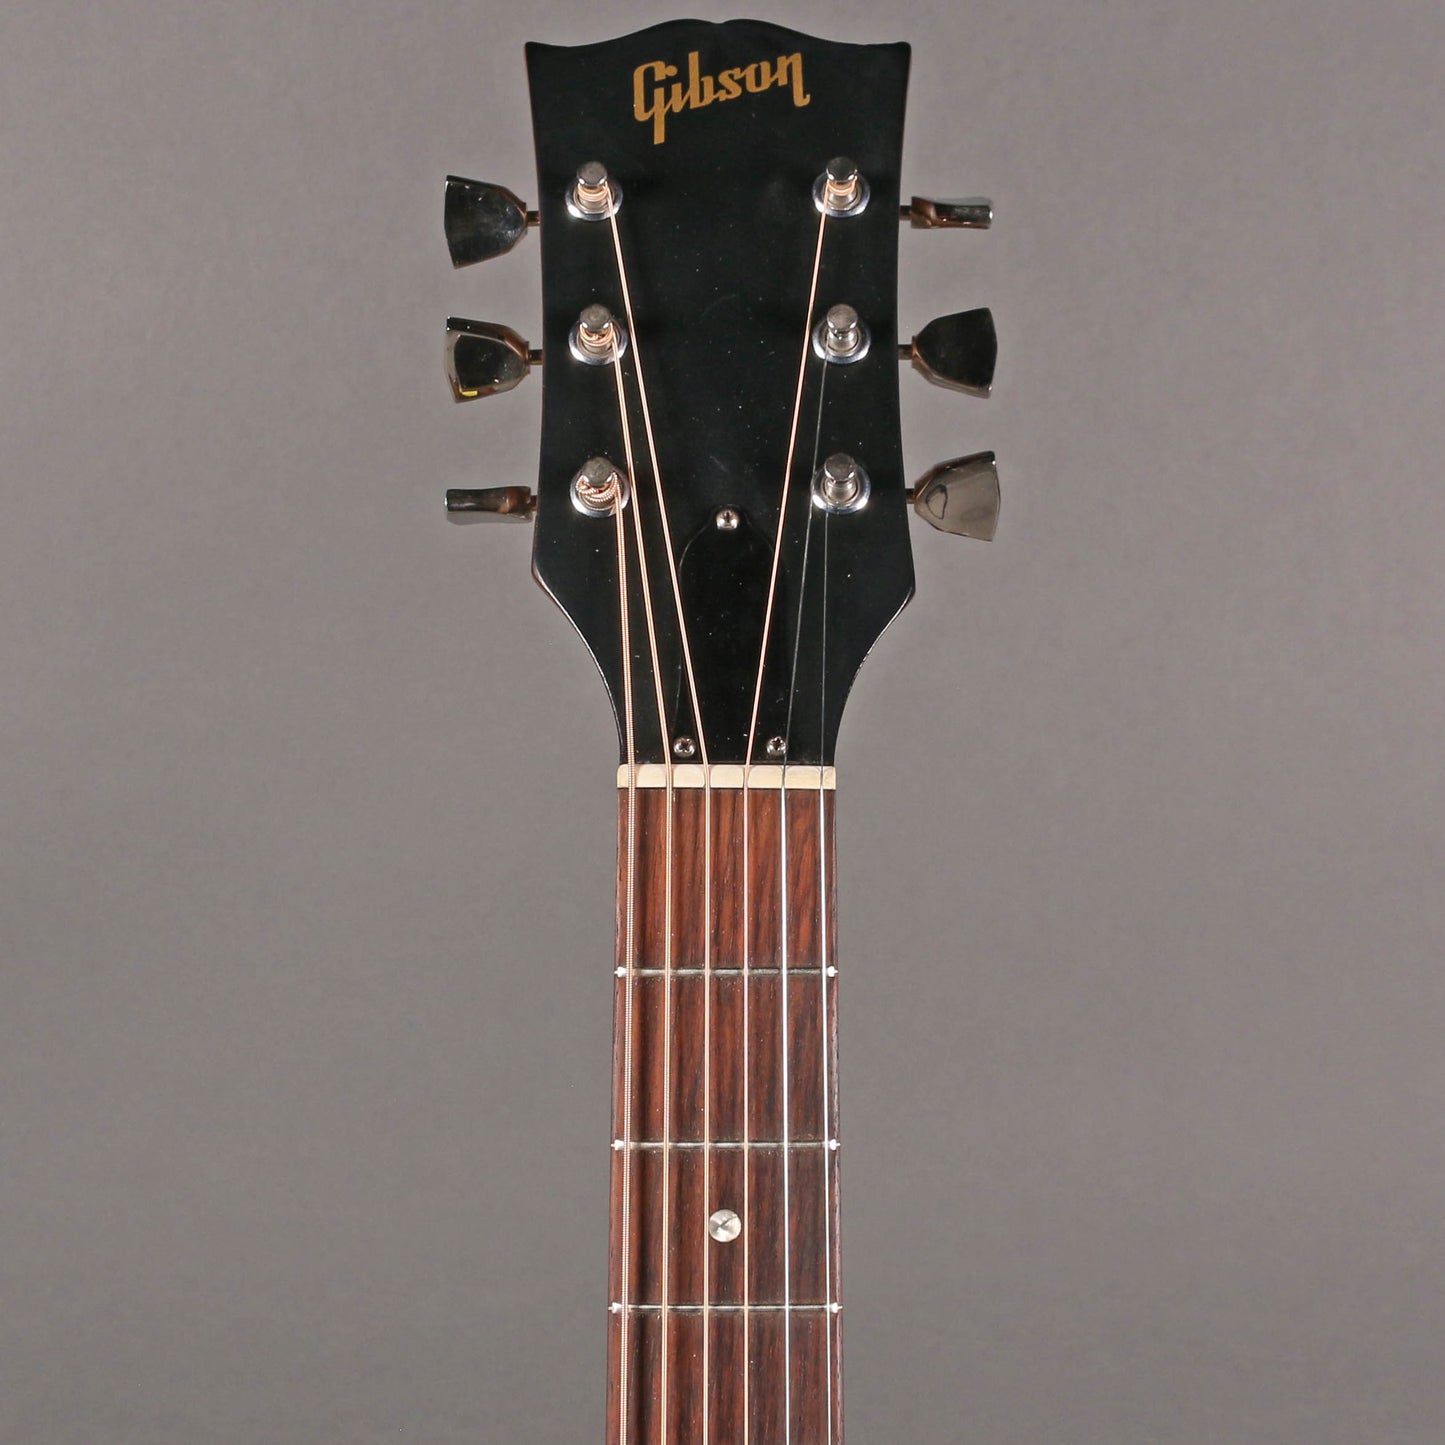 1973-75 Gibson B-25 Deluxe [*Kalamazoo Collection]